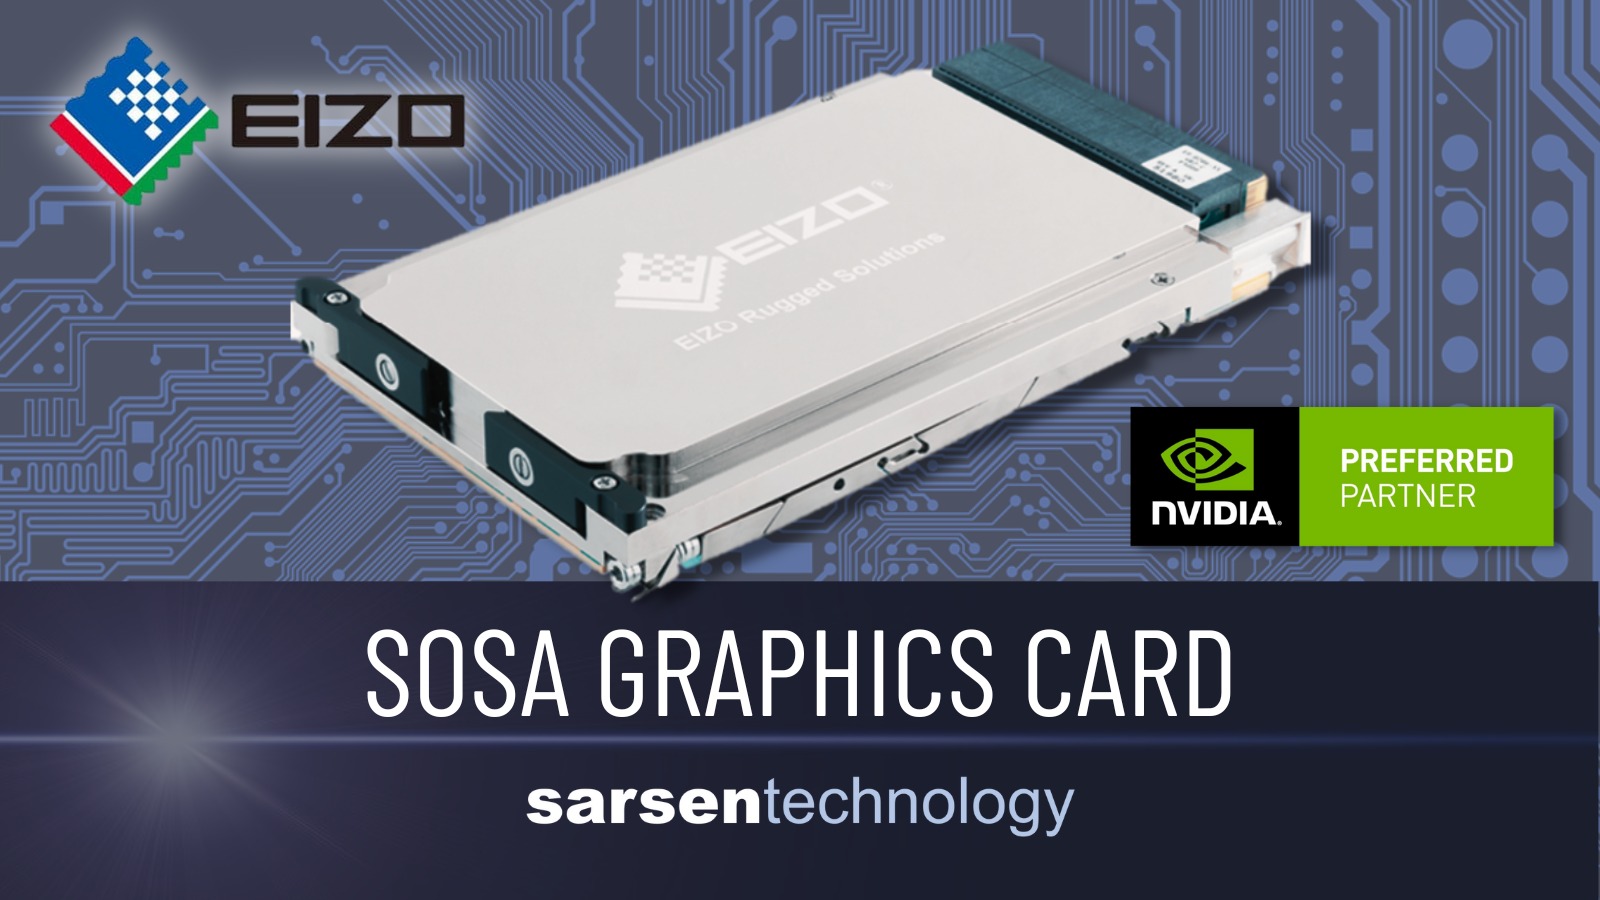 SOSA Graphics Card with NVIDIA A4500 GPU